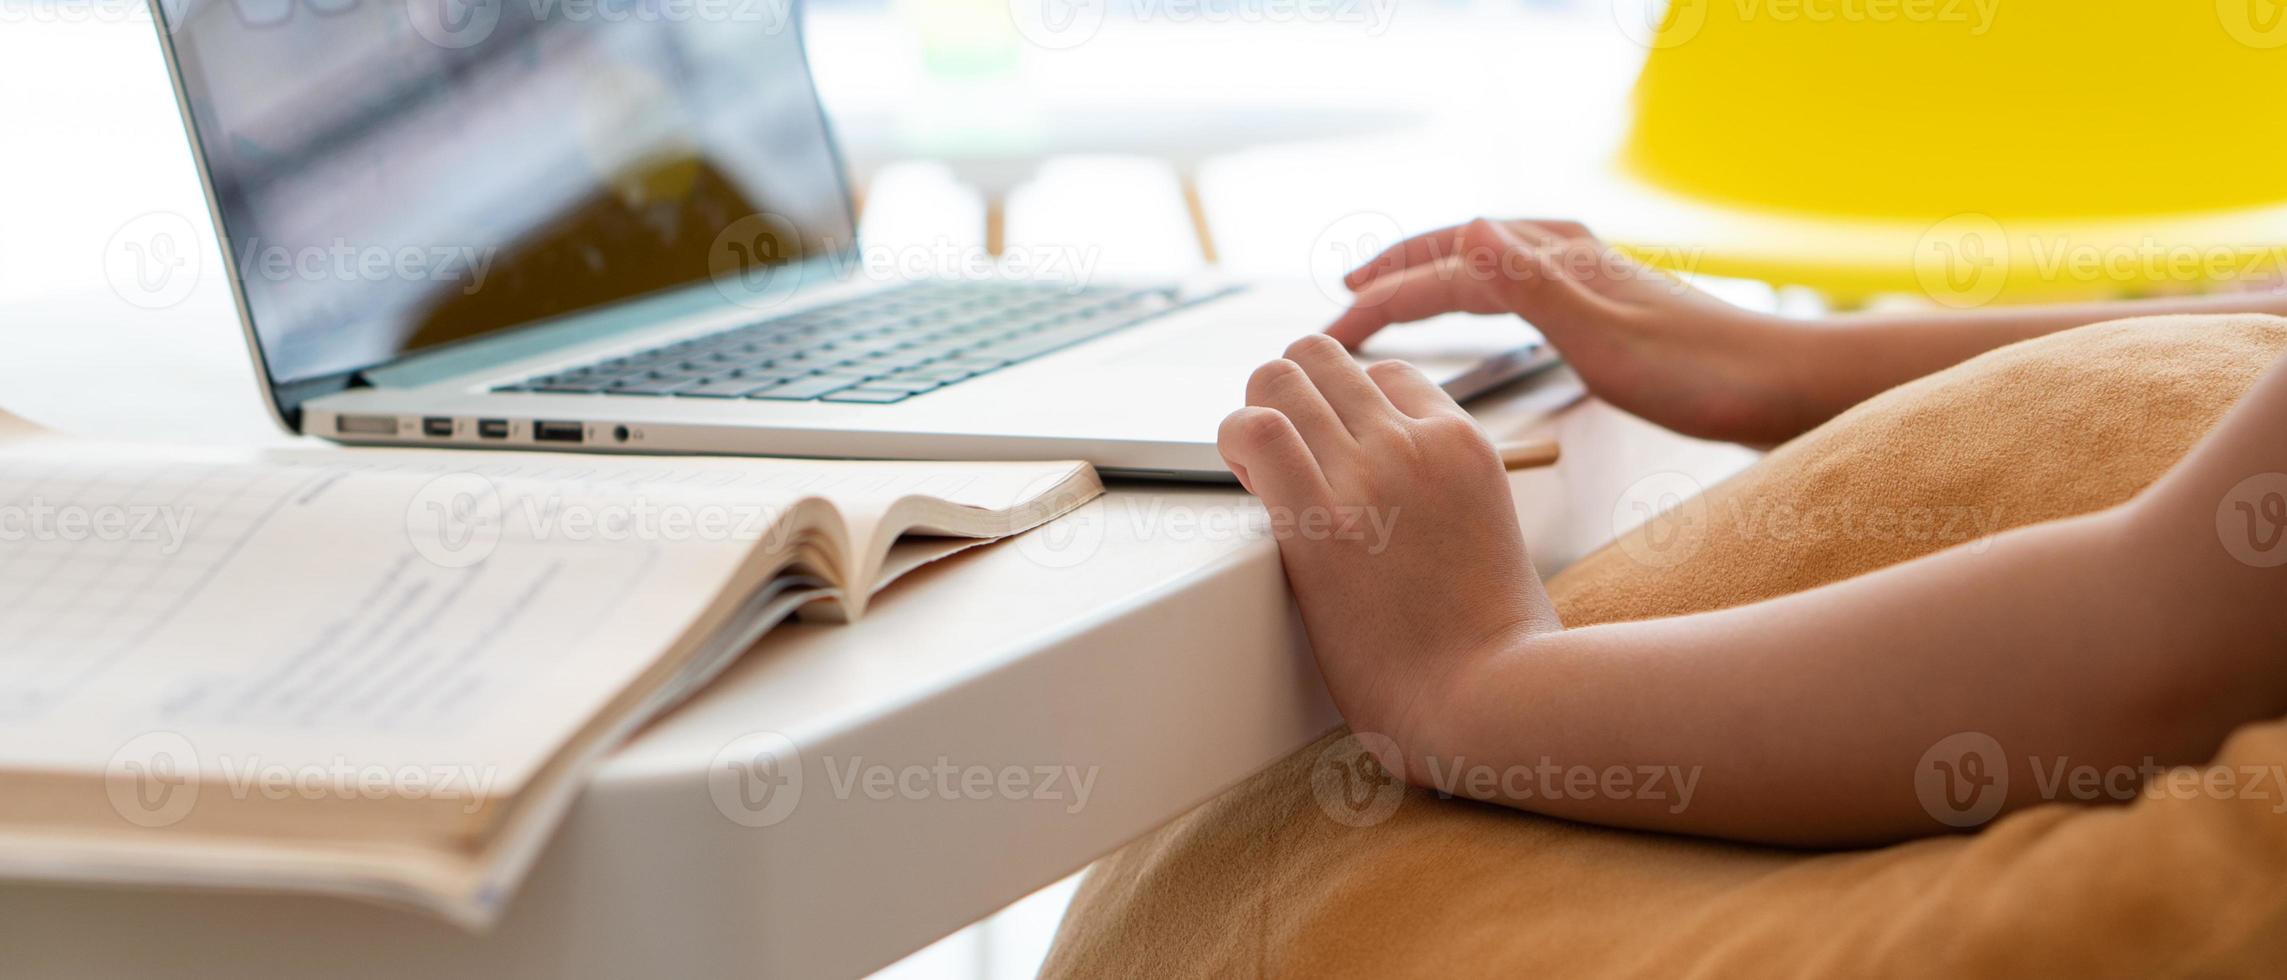 uma jovem asiática usando o computador para leran em casa como protocolo de distanciamento social durante covid-19 ou pandemia de coronavírus. conceito de ensino em casa foto